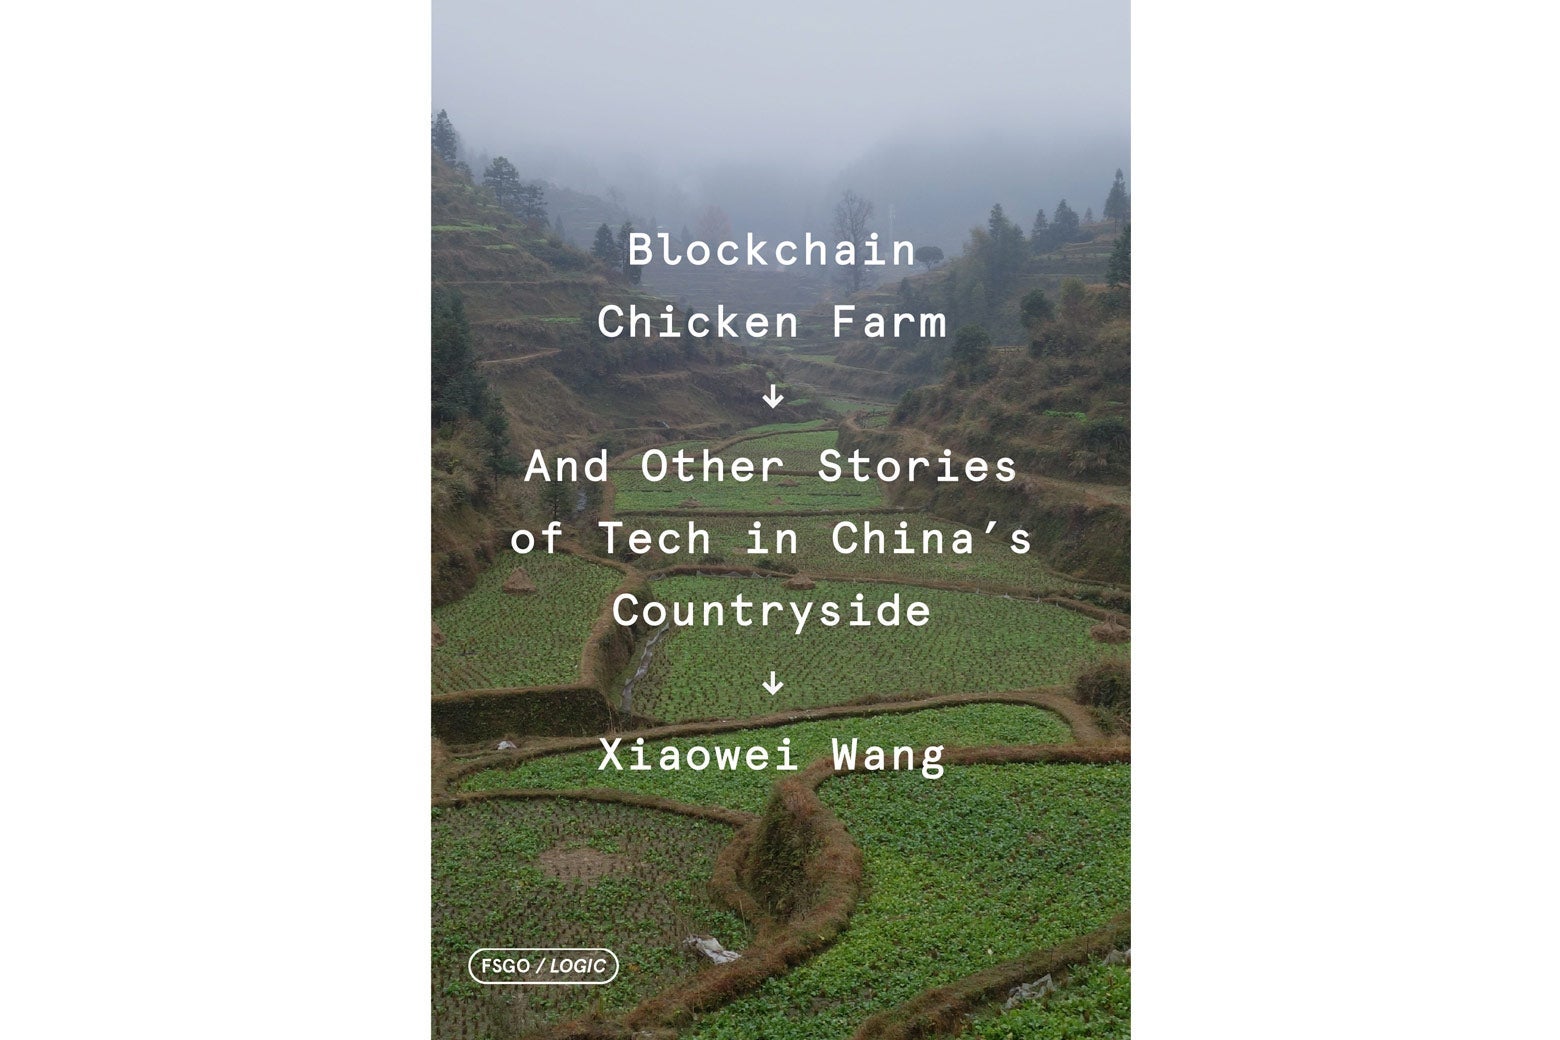 Blockchain Chicken Farm book jacket